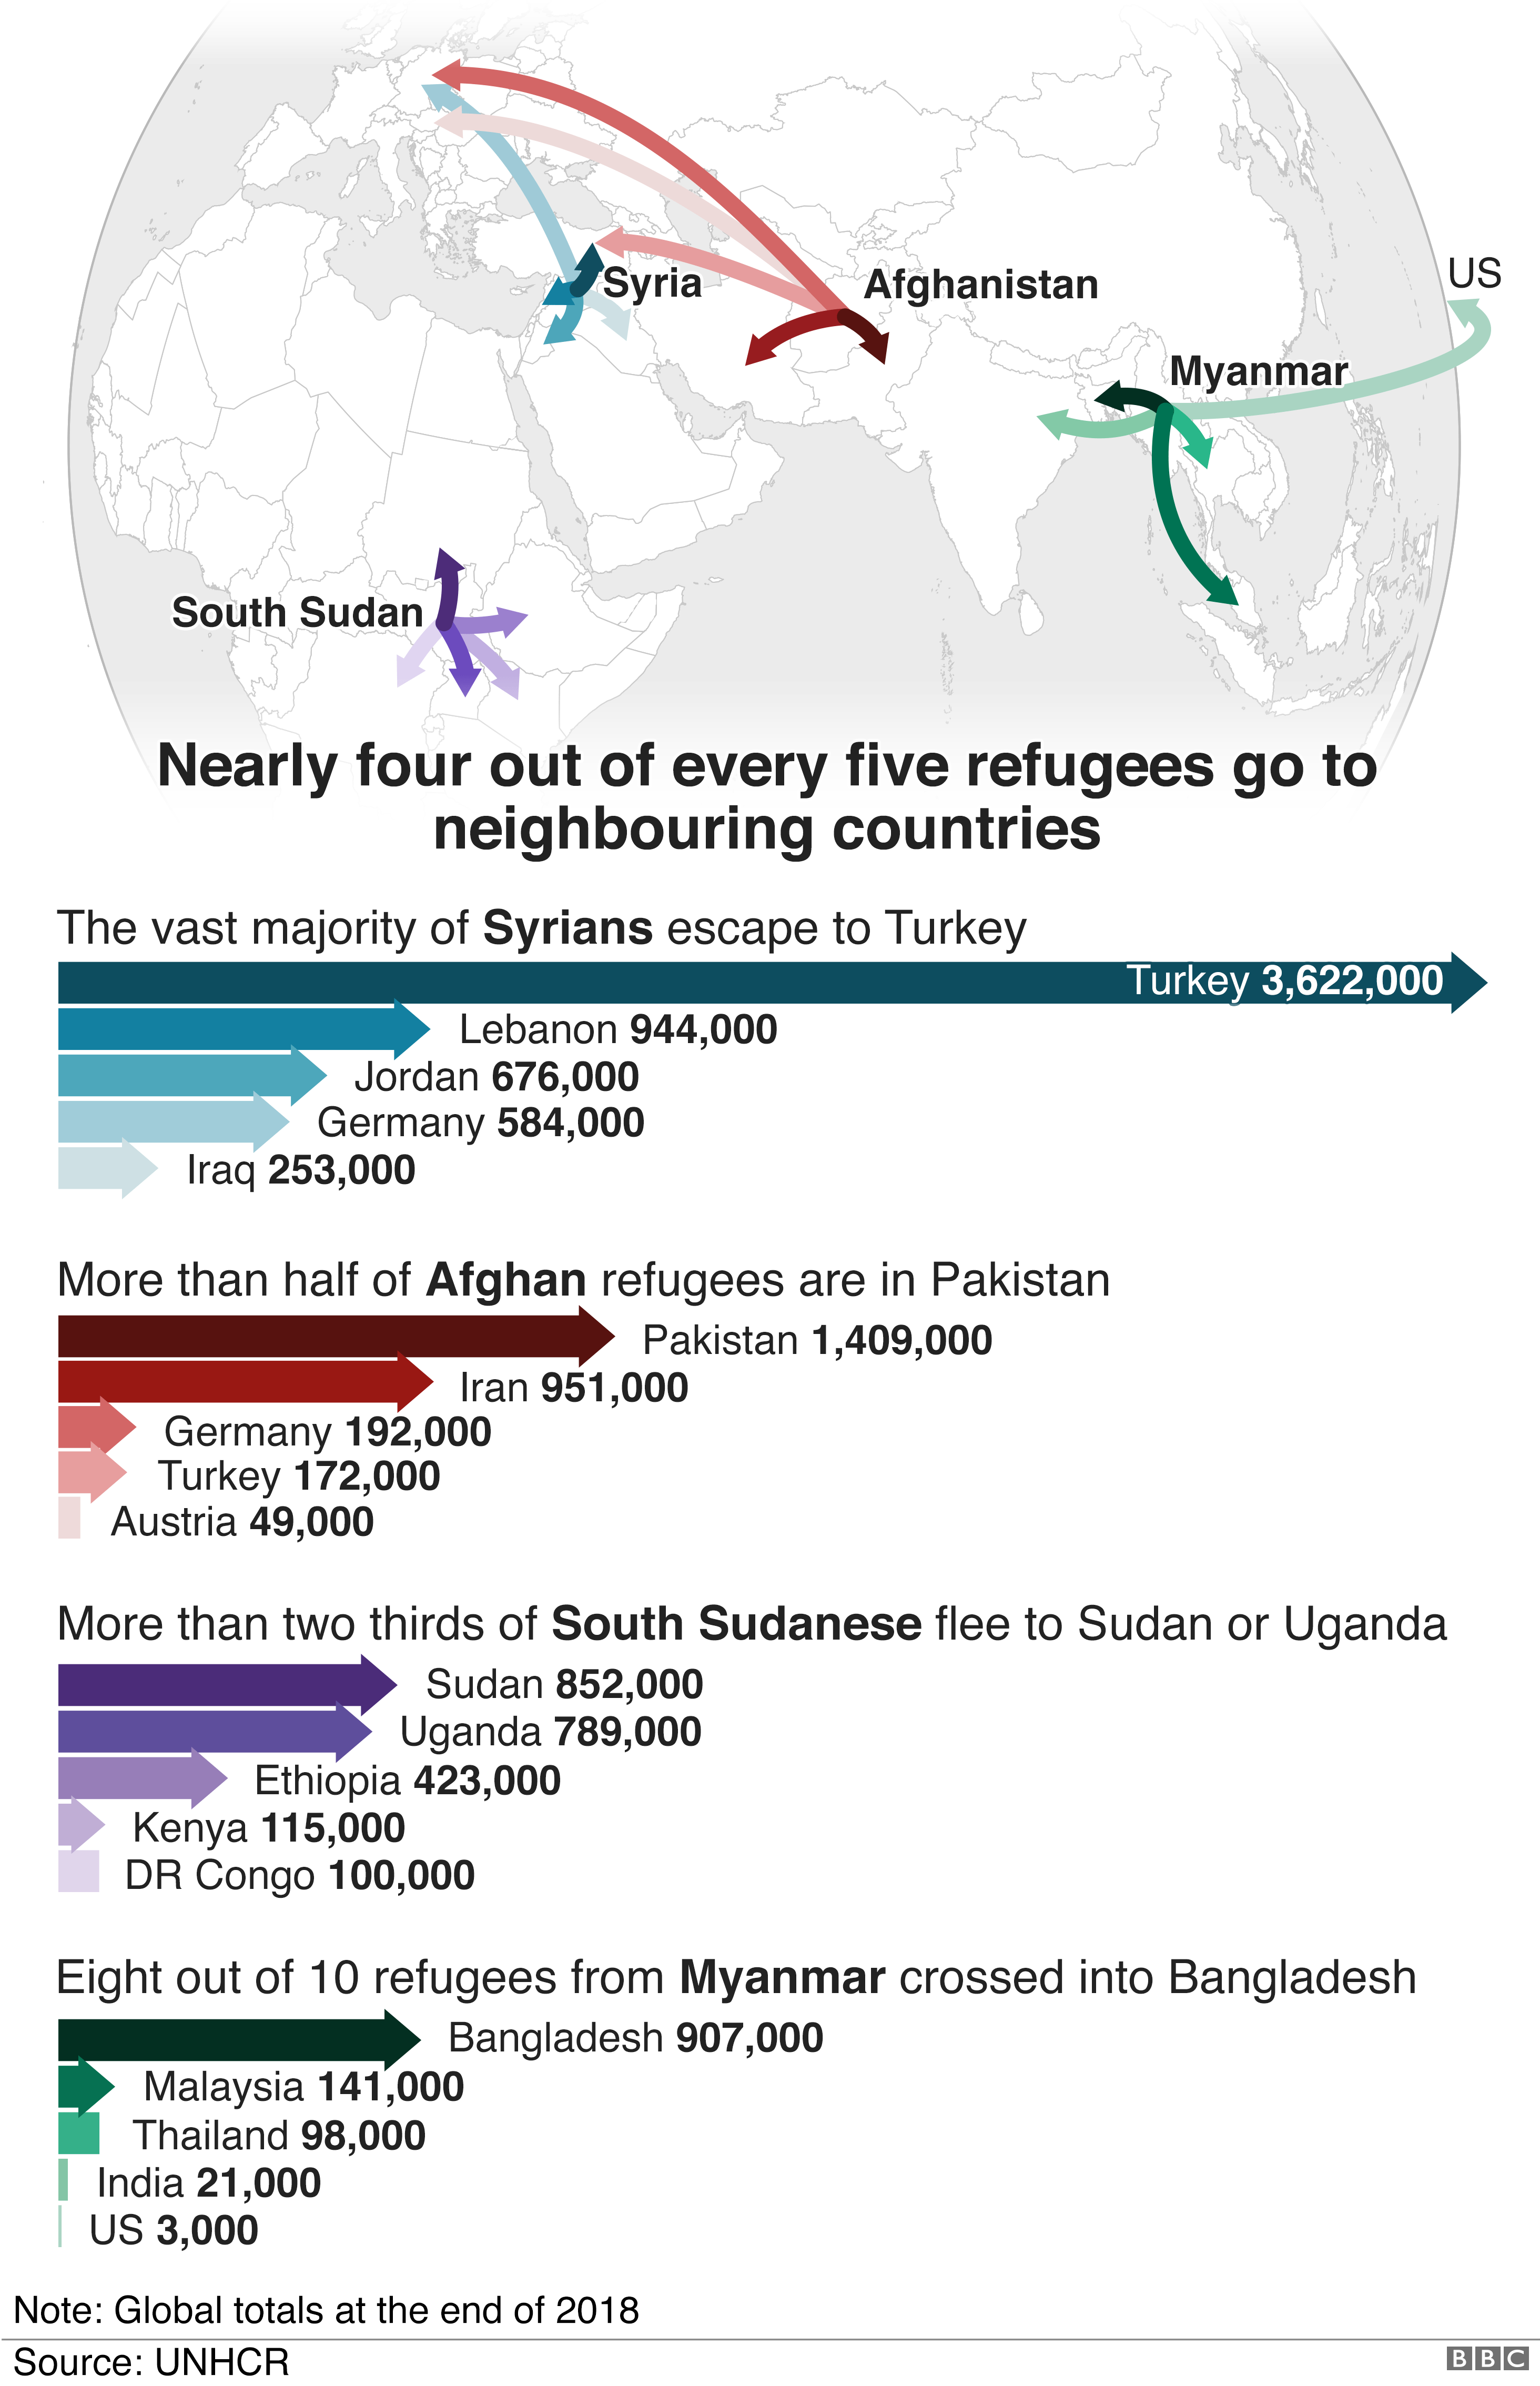 Карты, показывающие, куда направляются беженцы: большинство сирийцев переезжают в Турцию, афганцы - в Пакистан, южносуданцы - в Судан или Уганду, а беженцы из Мьянмы - в Бангладеш